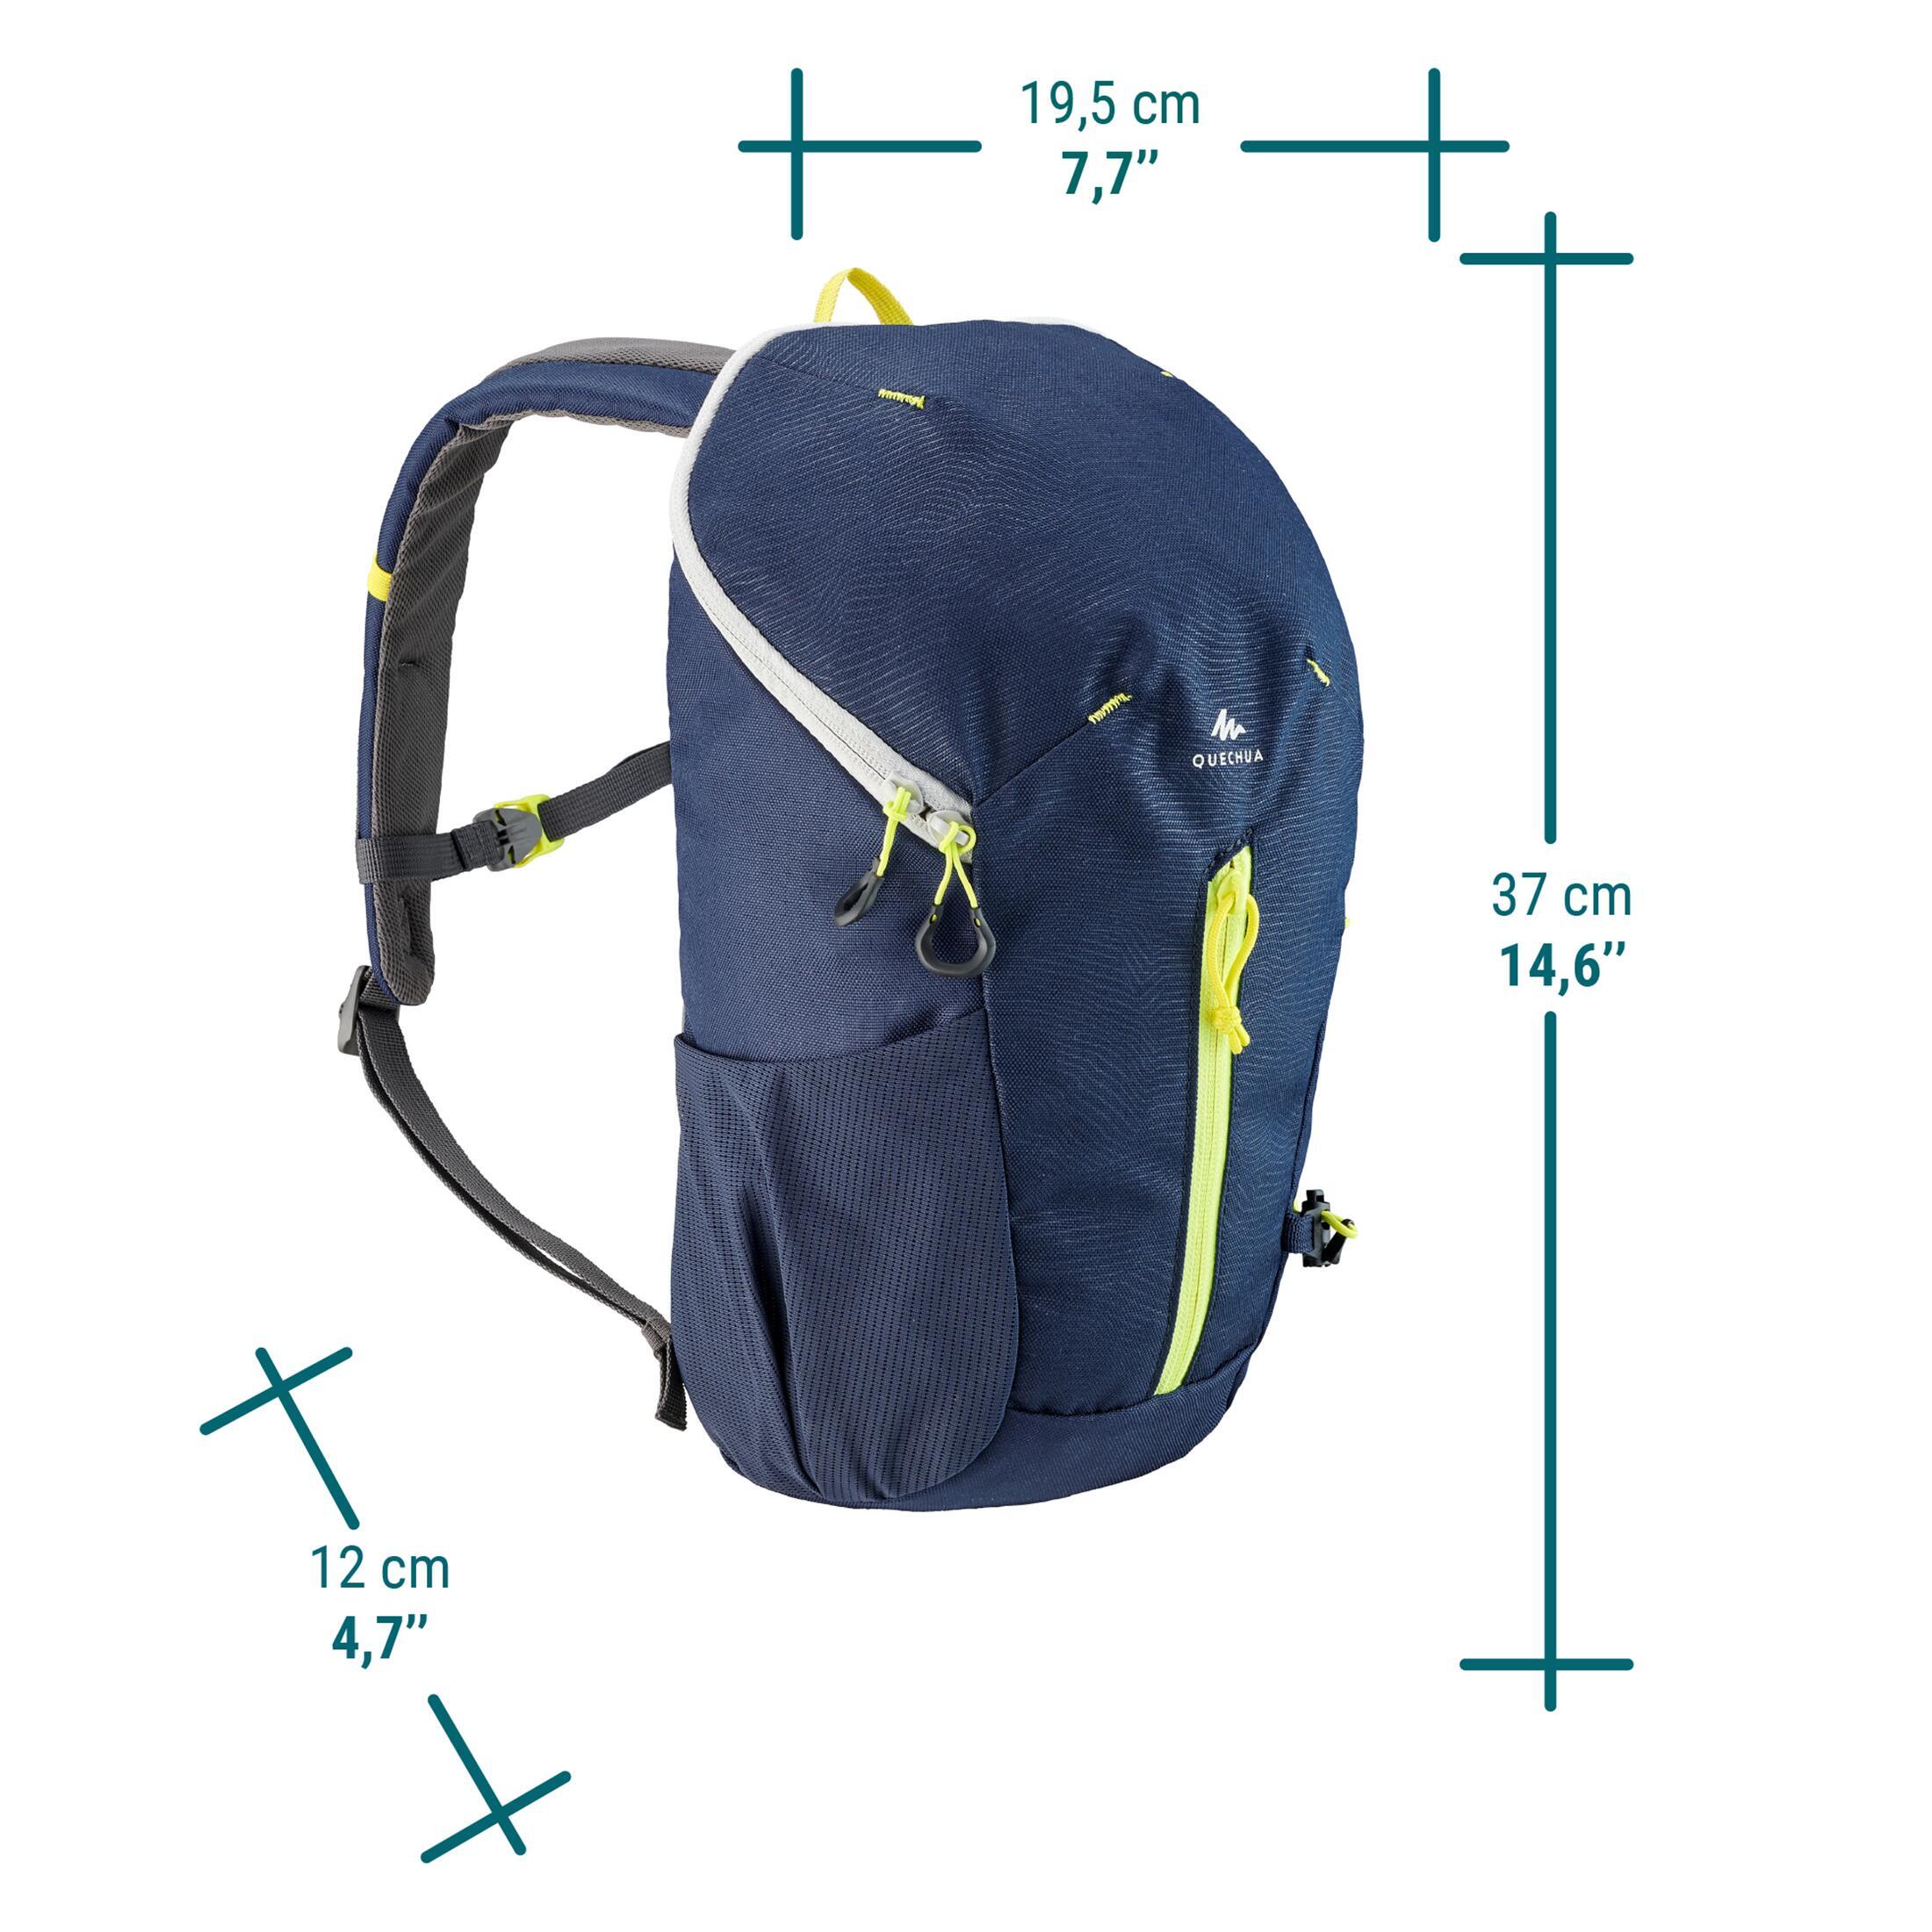 Kids' hiking backpack 10L - MH100 4/11